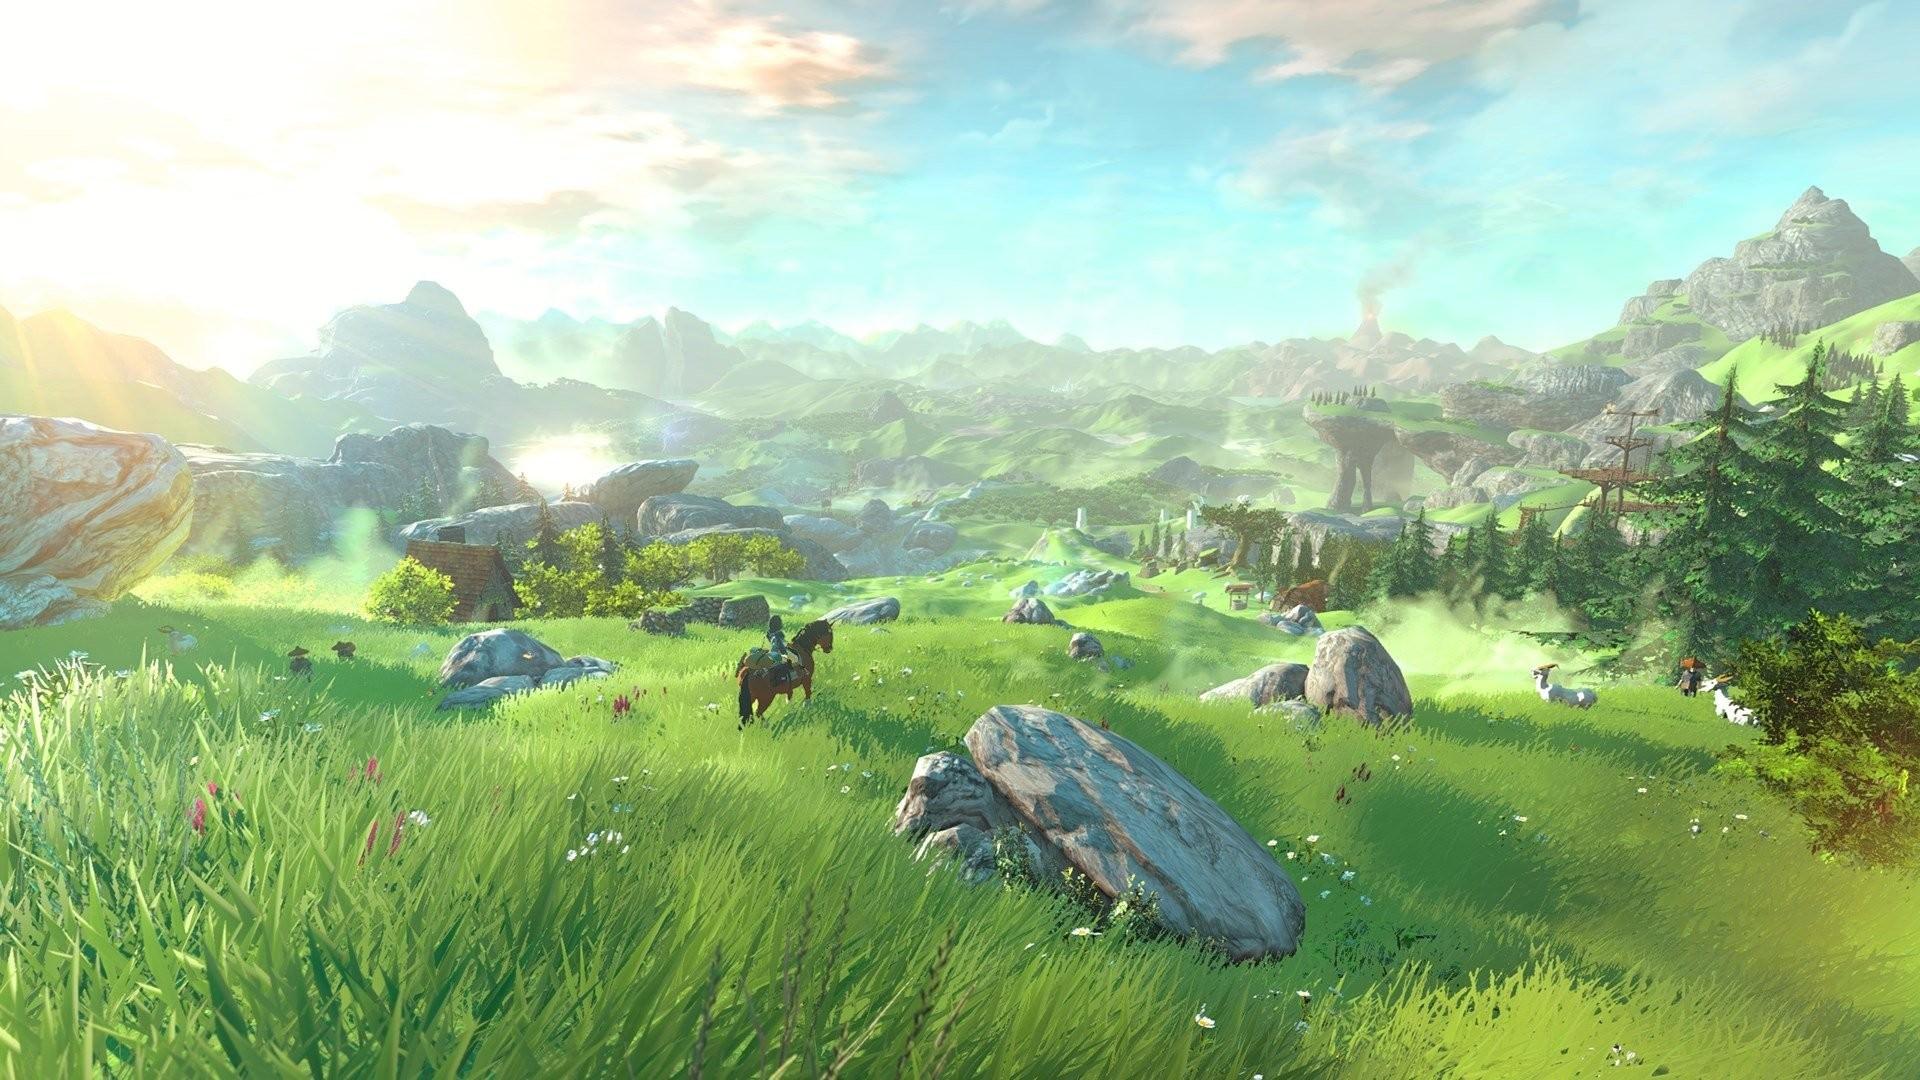 Legend of Zelda Breath of the Wild wallpaperDownload free HD